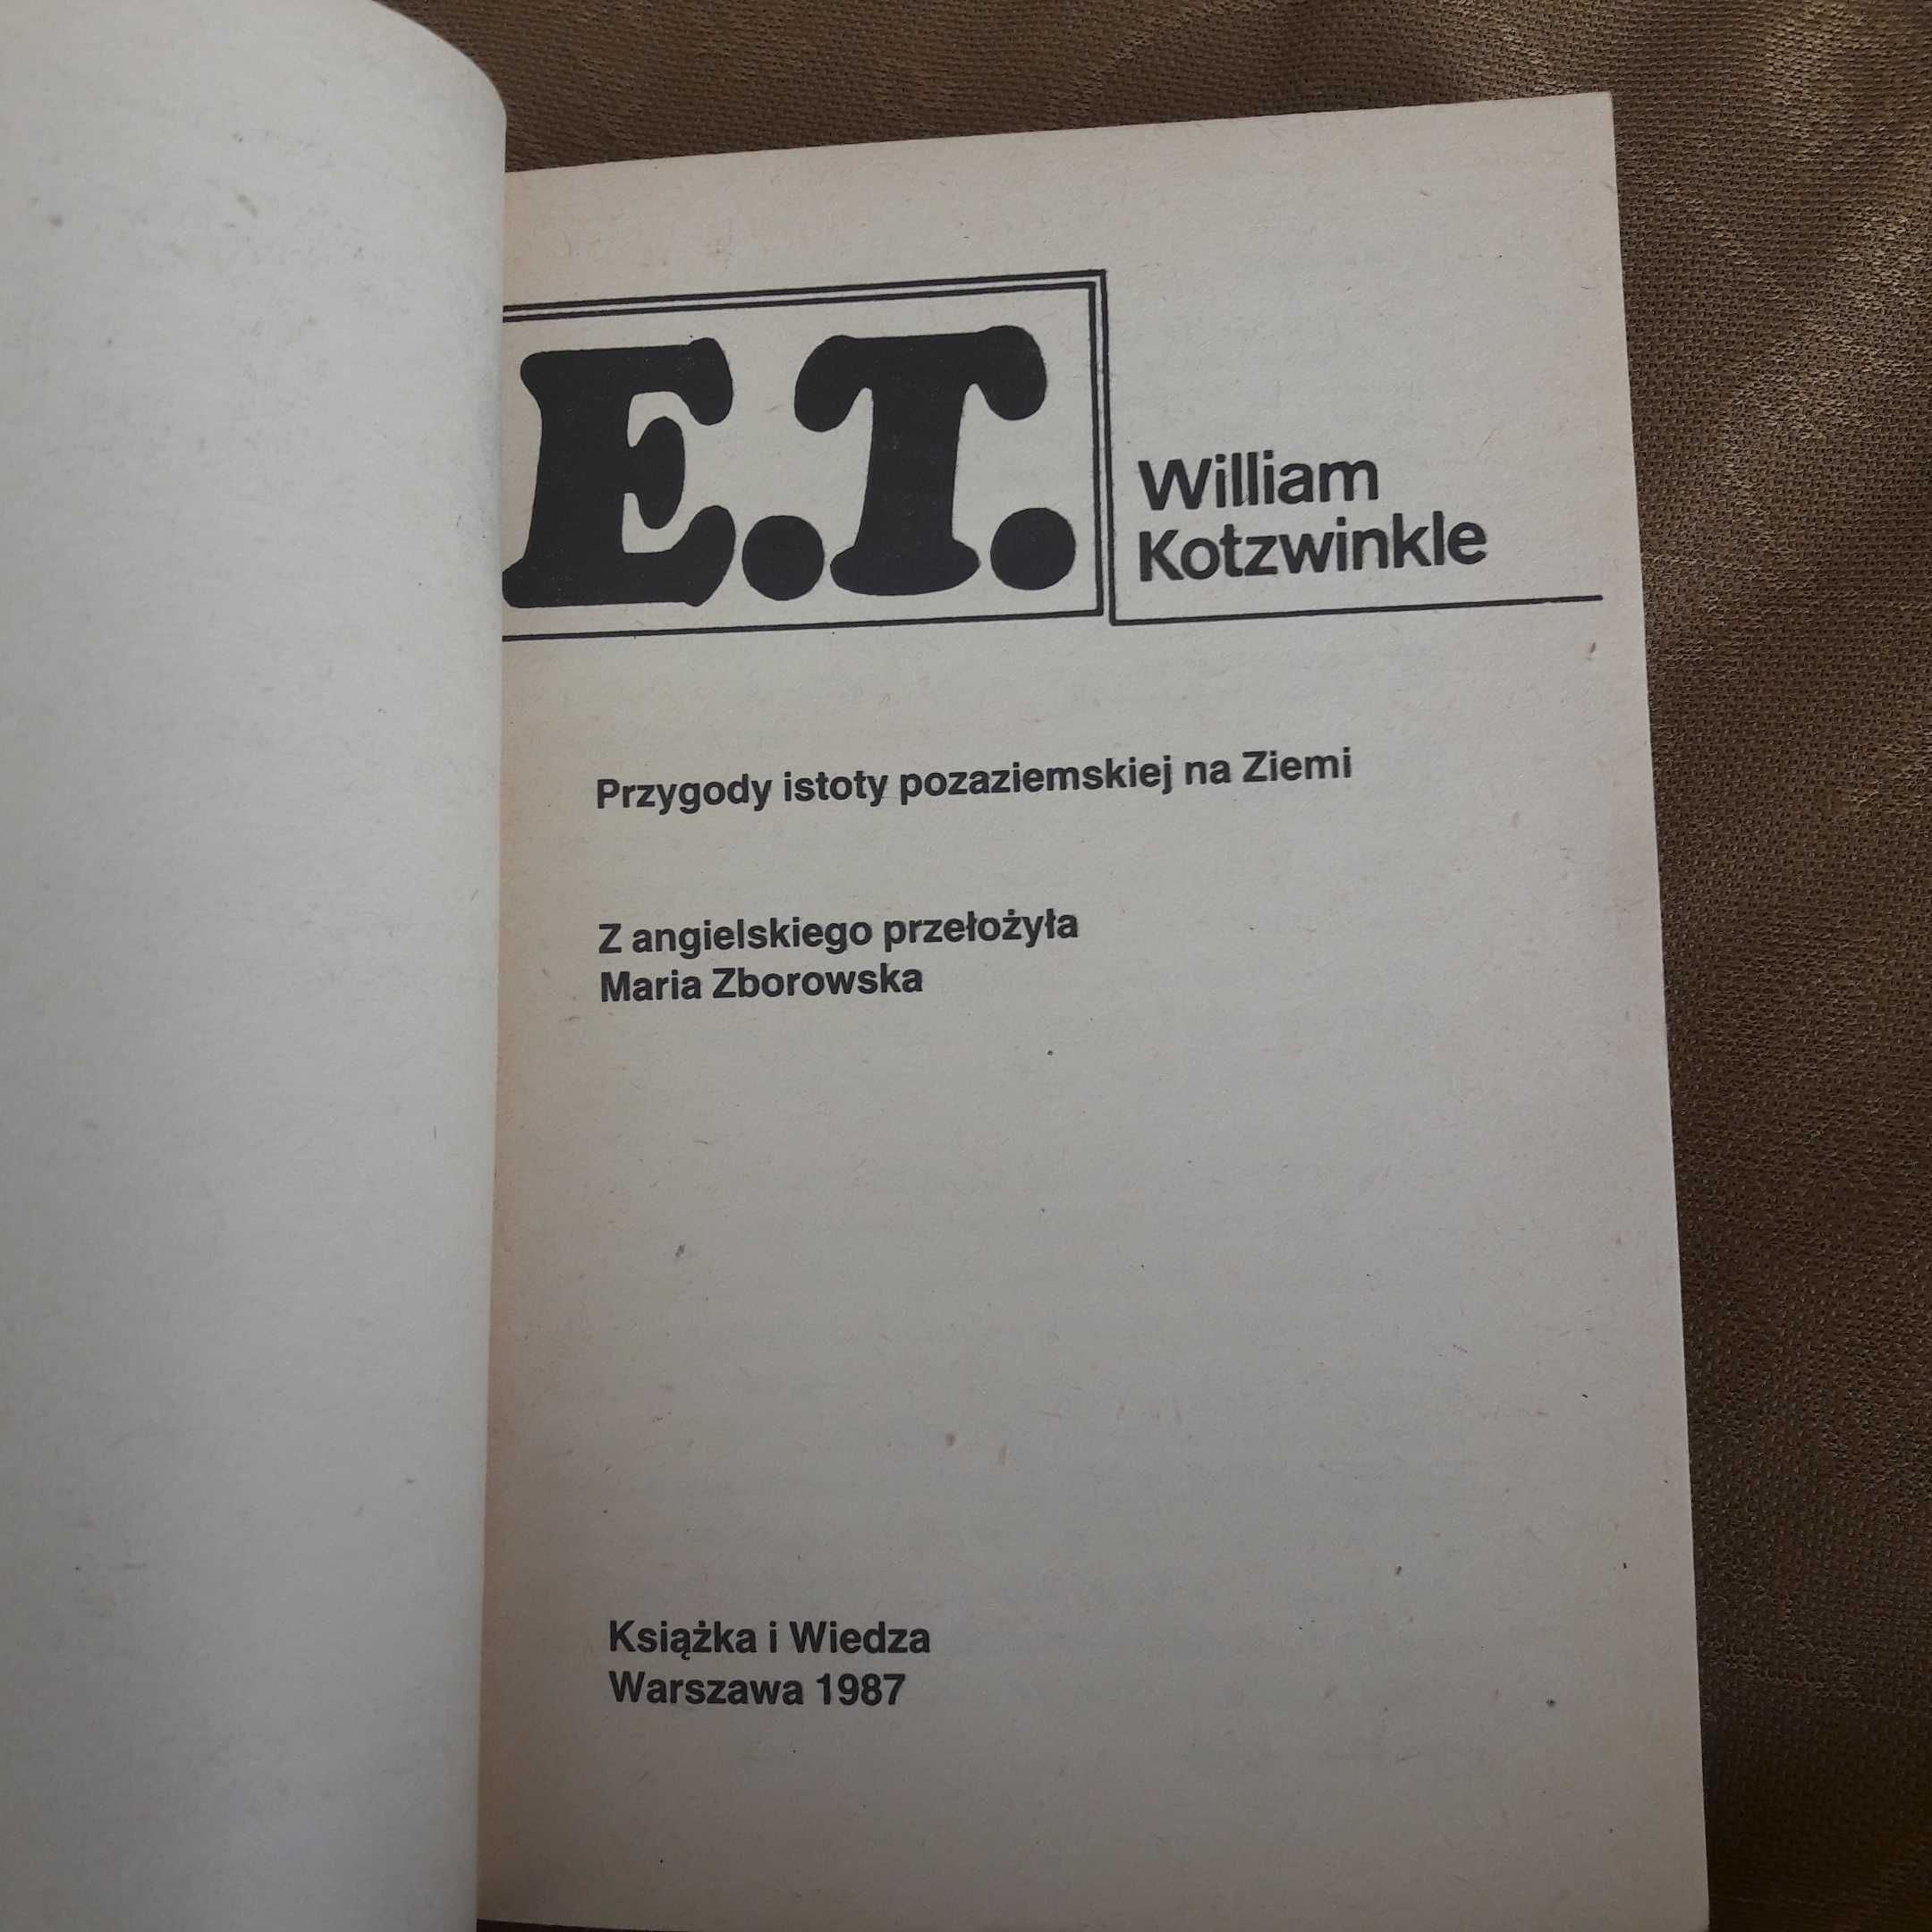 E.T. - William Kotzwinkle